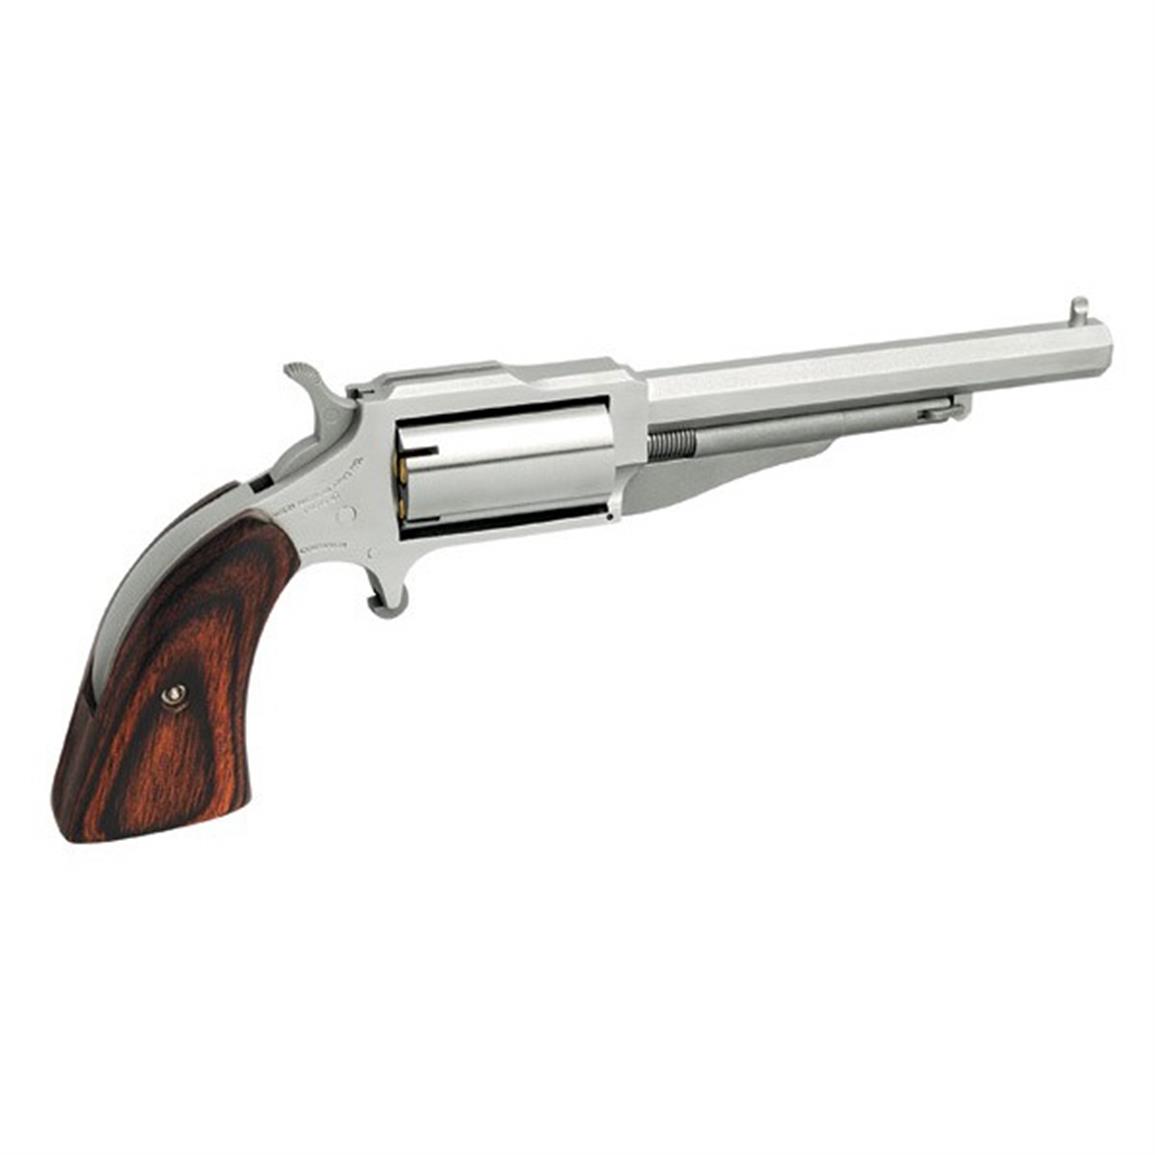 NAA 1860 The Earl, Revolver, .22 Magnum, Rimfire, 18604, 744253001987, 4 inch Barrel